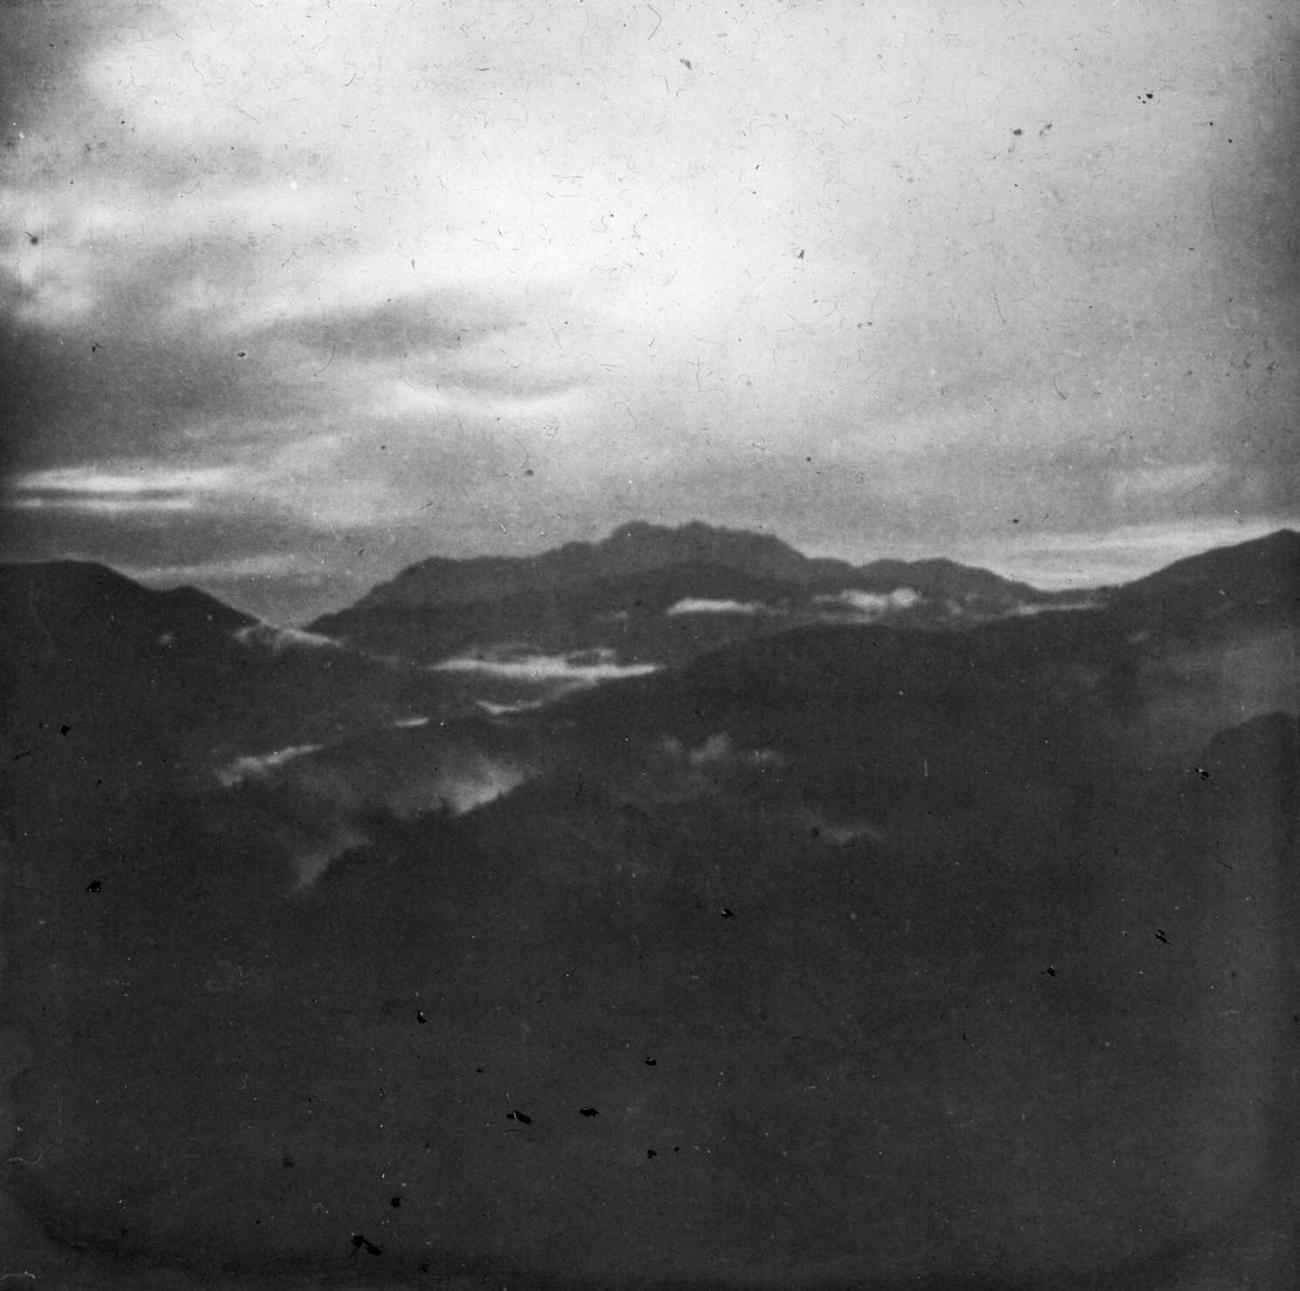 BD/66/460 - 
Berglandschap onder een dreigende lucht
